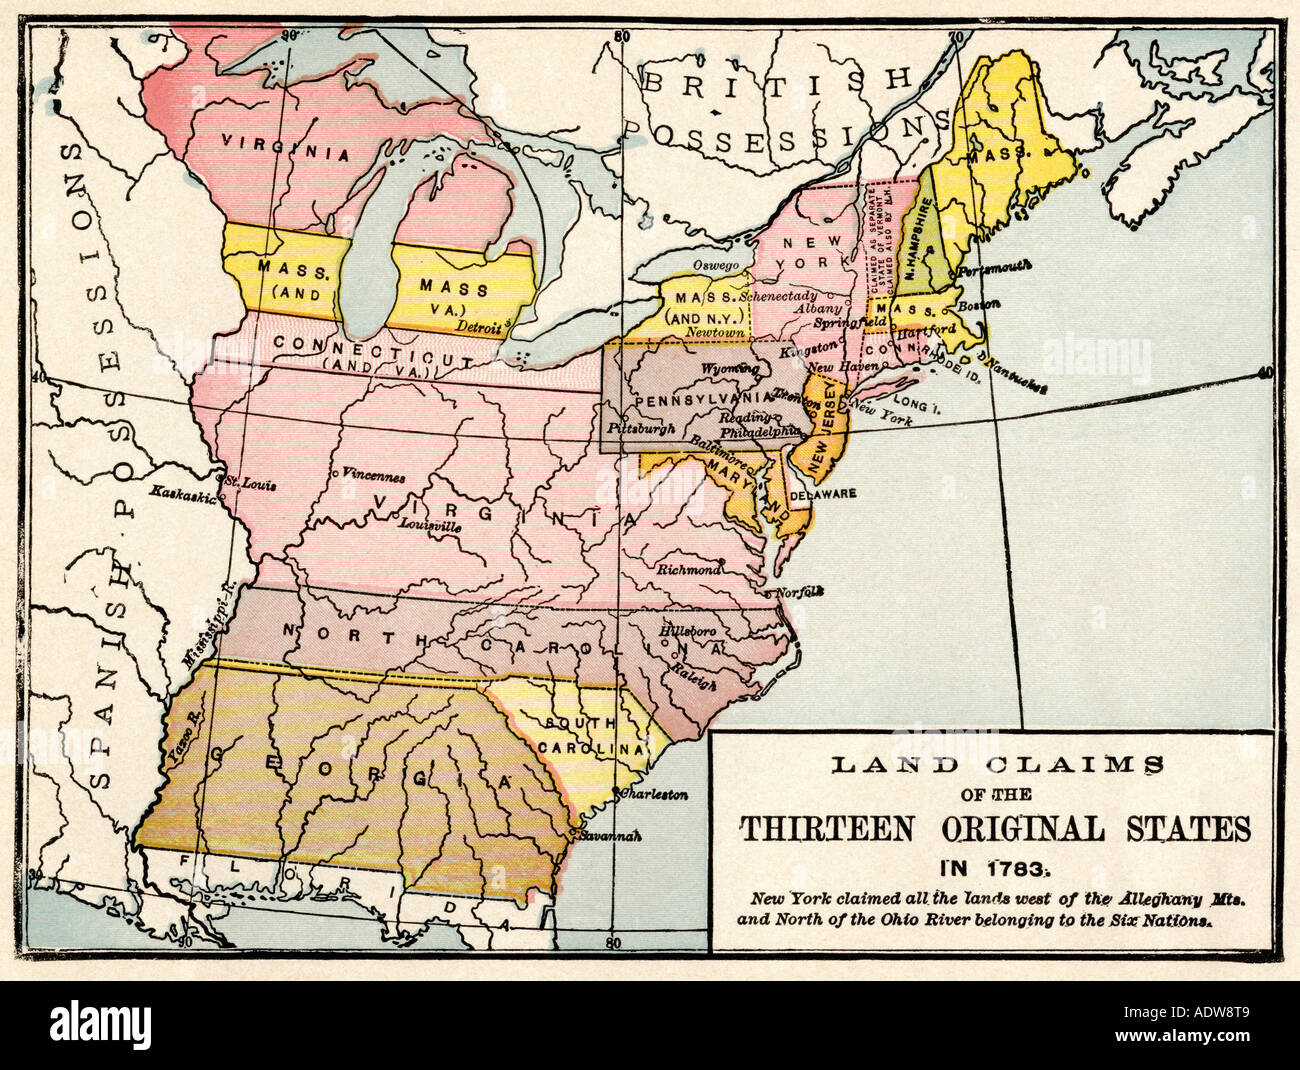 Mapa mostrando las reivindicaciones de tierras de los trece estados originales de 1783. Litografía de color Foto de stock